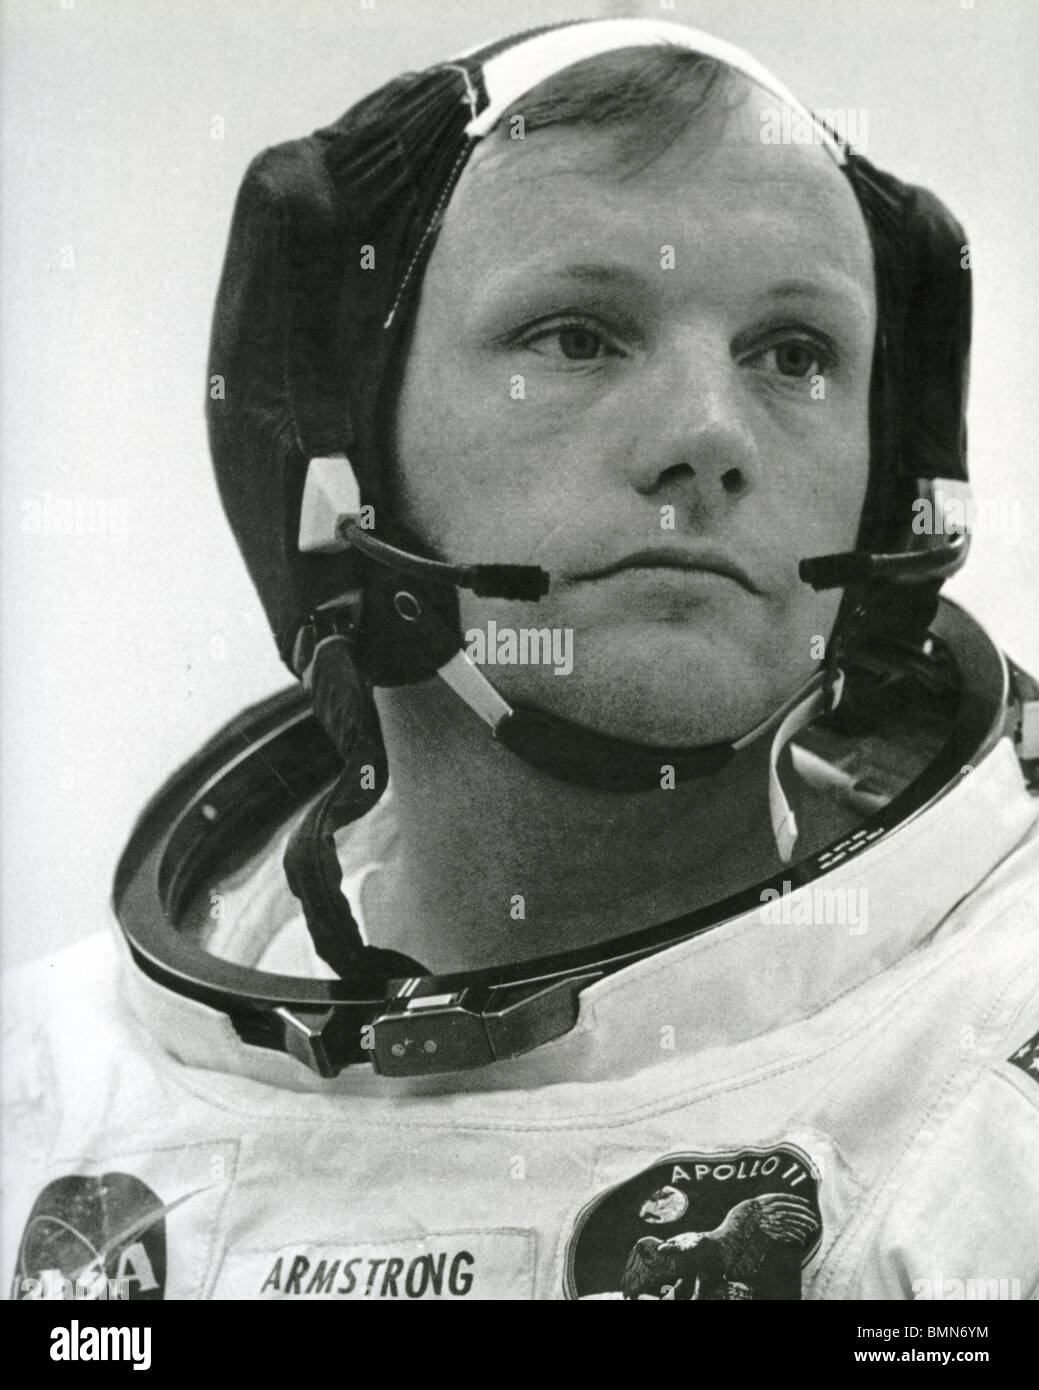 L'astronaute américain Neil Armstrong - sur la mission Apollo en 1969, lorsqu'il est devenu le premier homme à marcher sur la Lune Banque D'Images